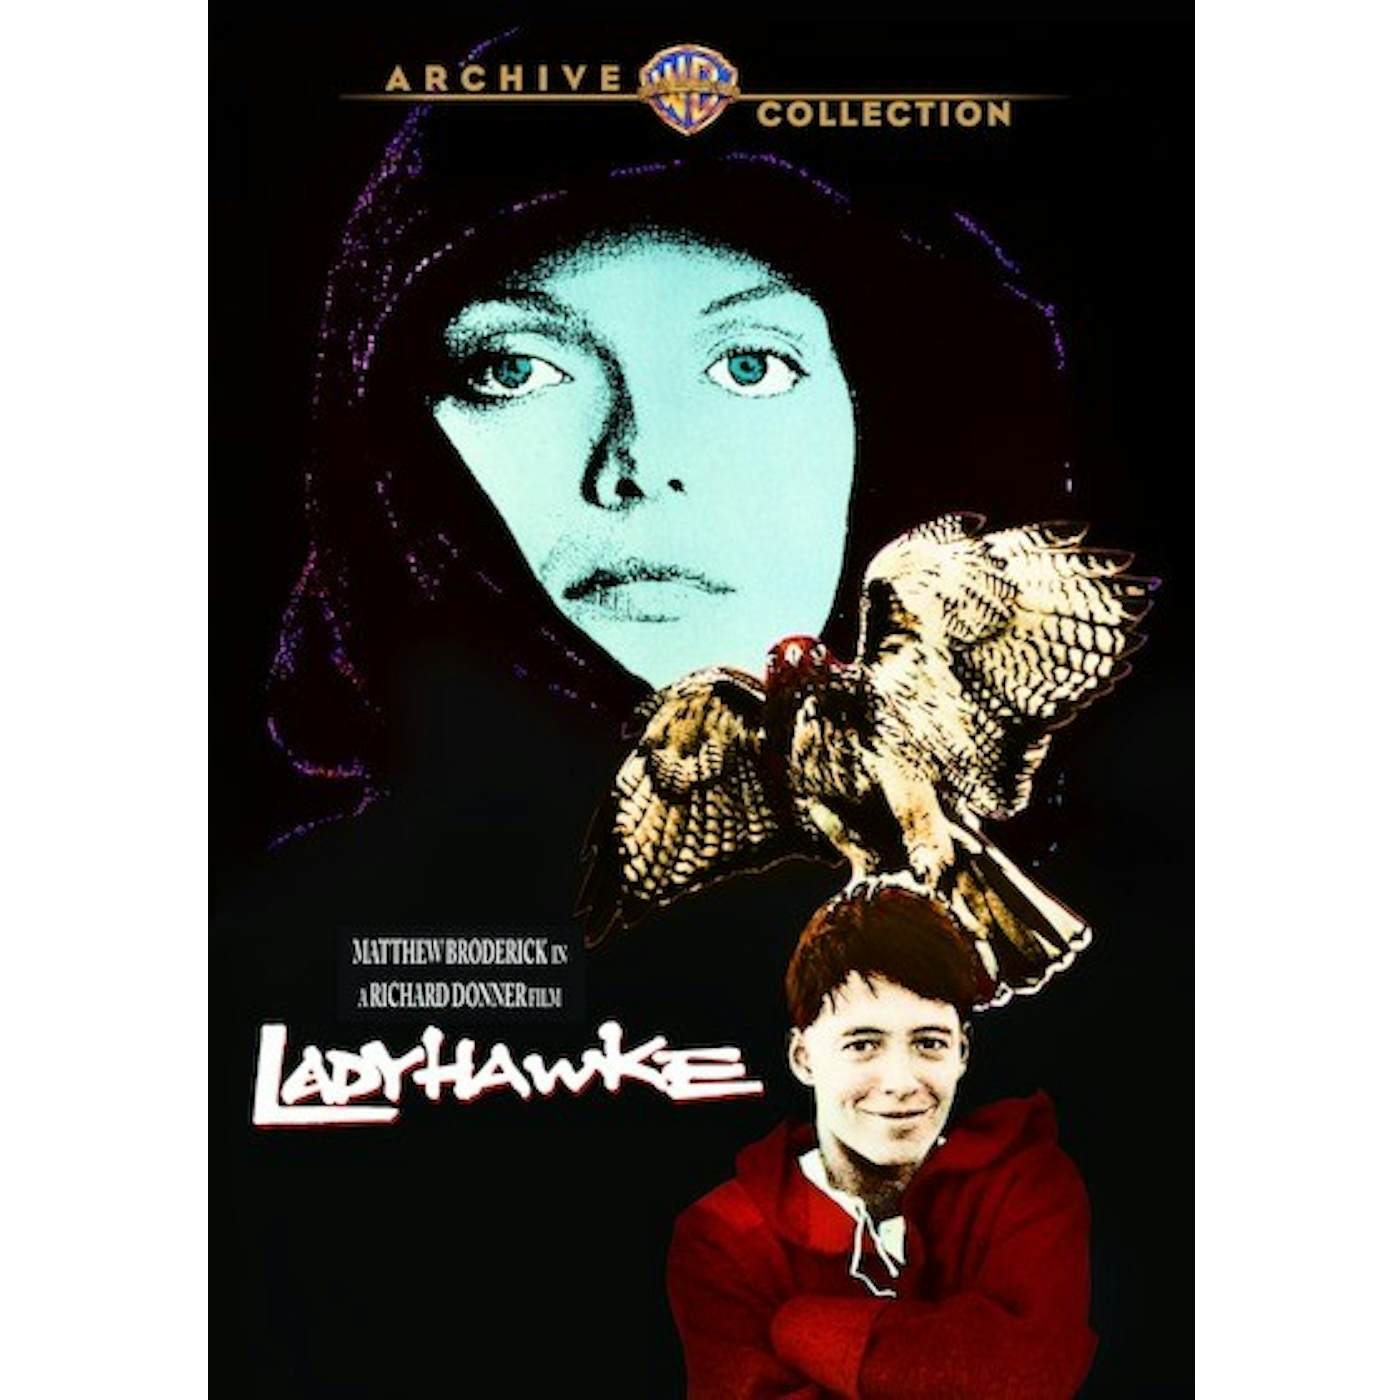 LADYHAWKE (1985) DVD